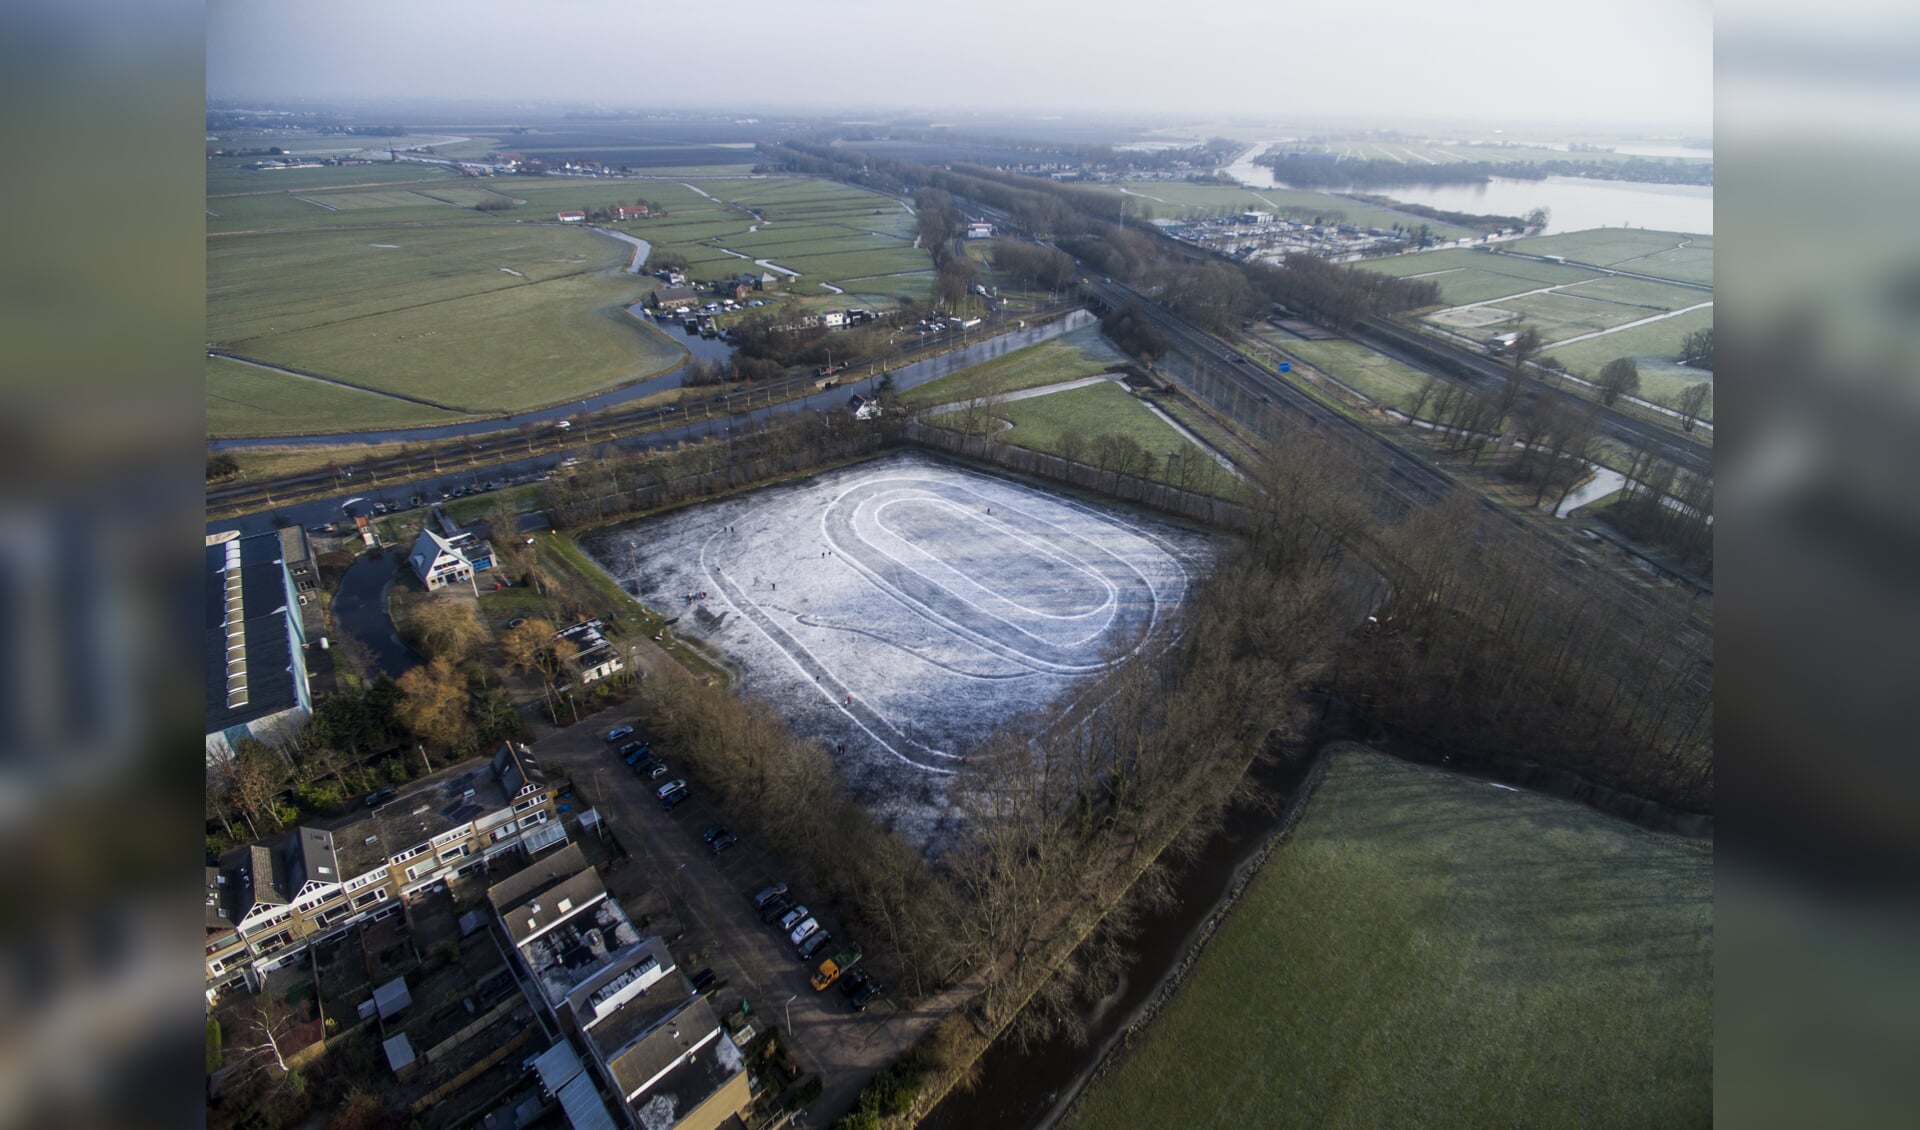 De natuurijsbaan in Sassenheim gaat de komende weken niet open. | Foto: pr./www.aerialfootageholland.nl/